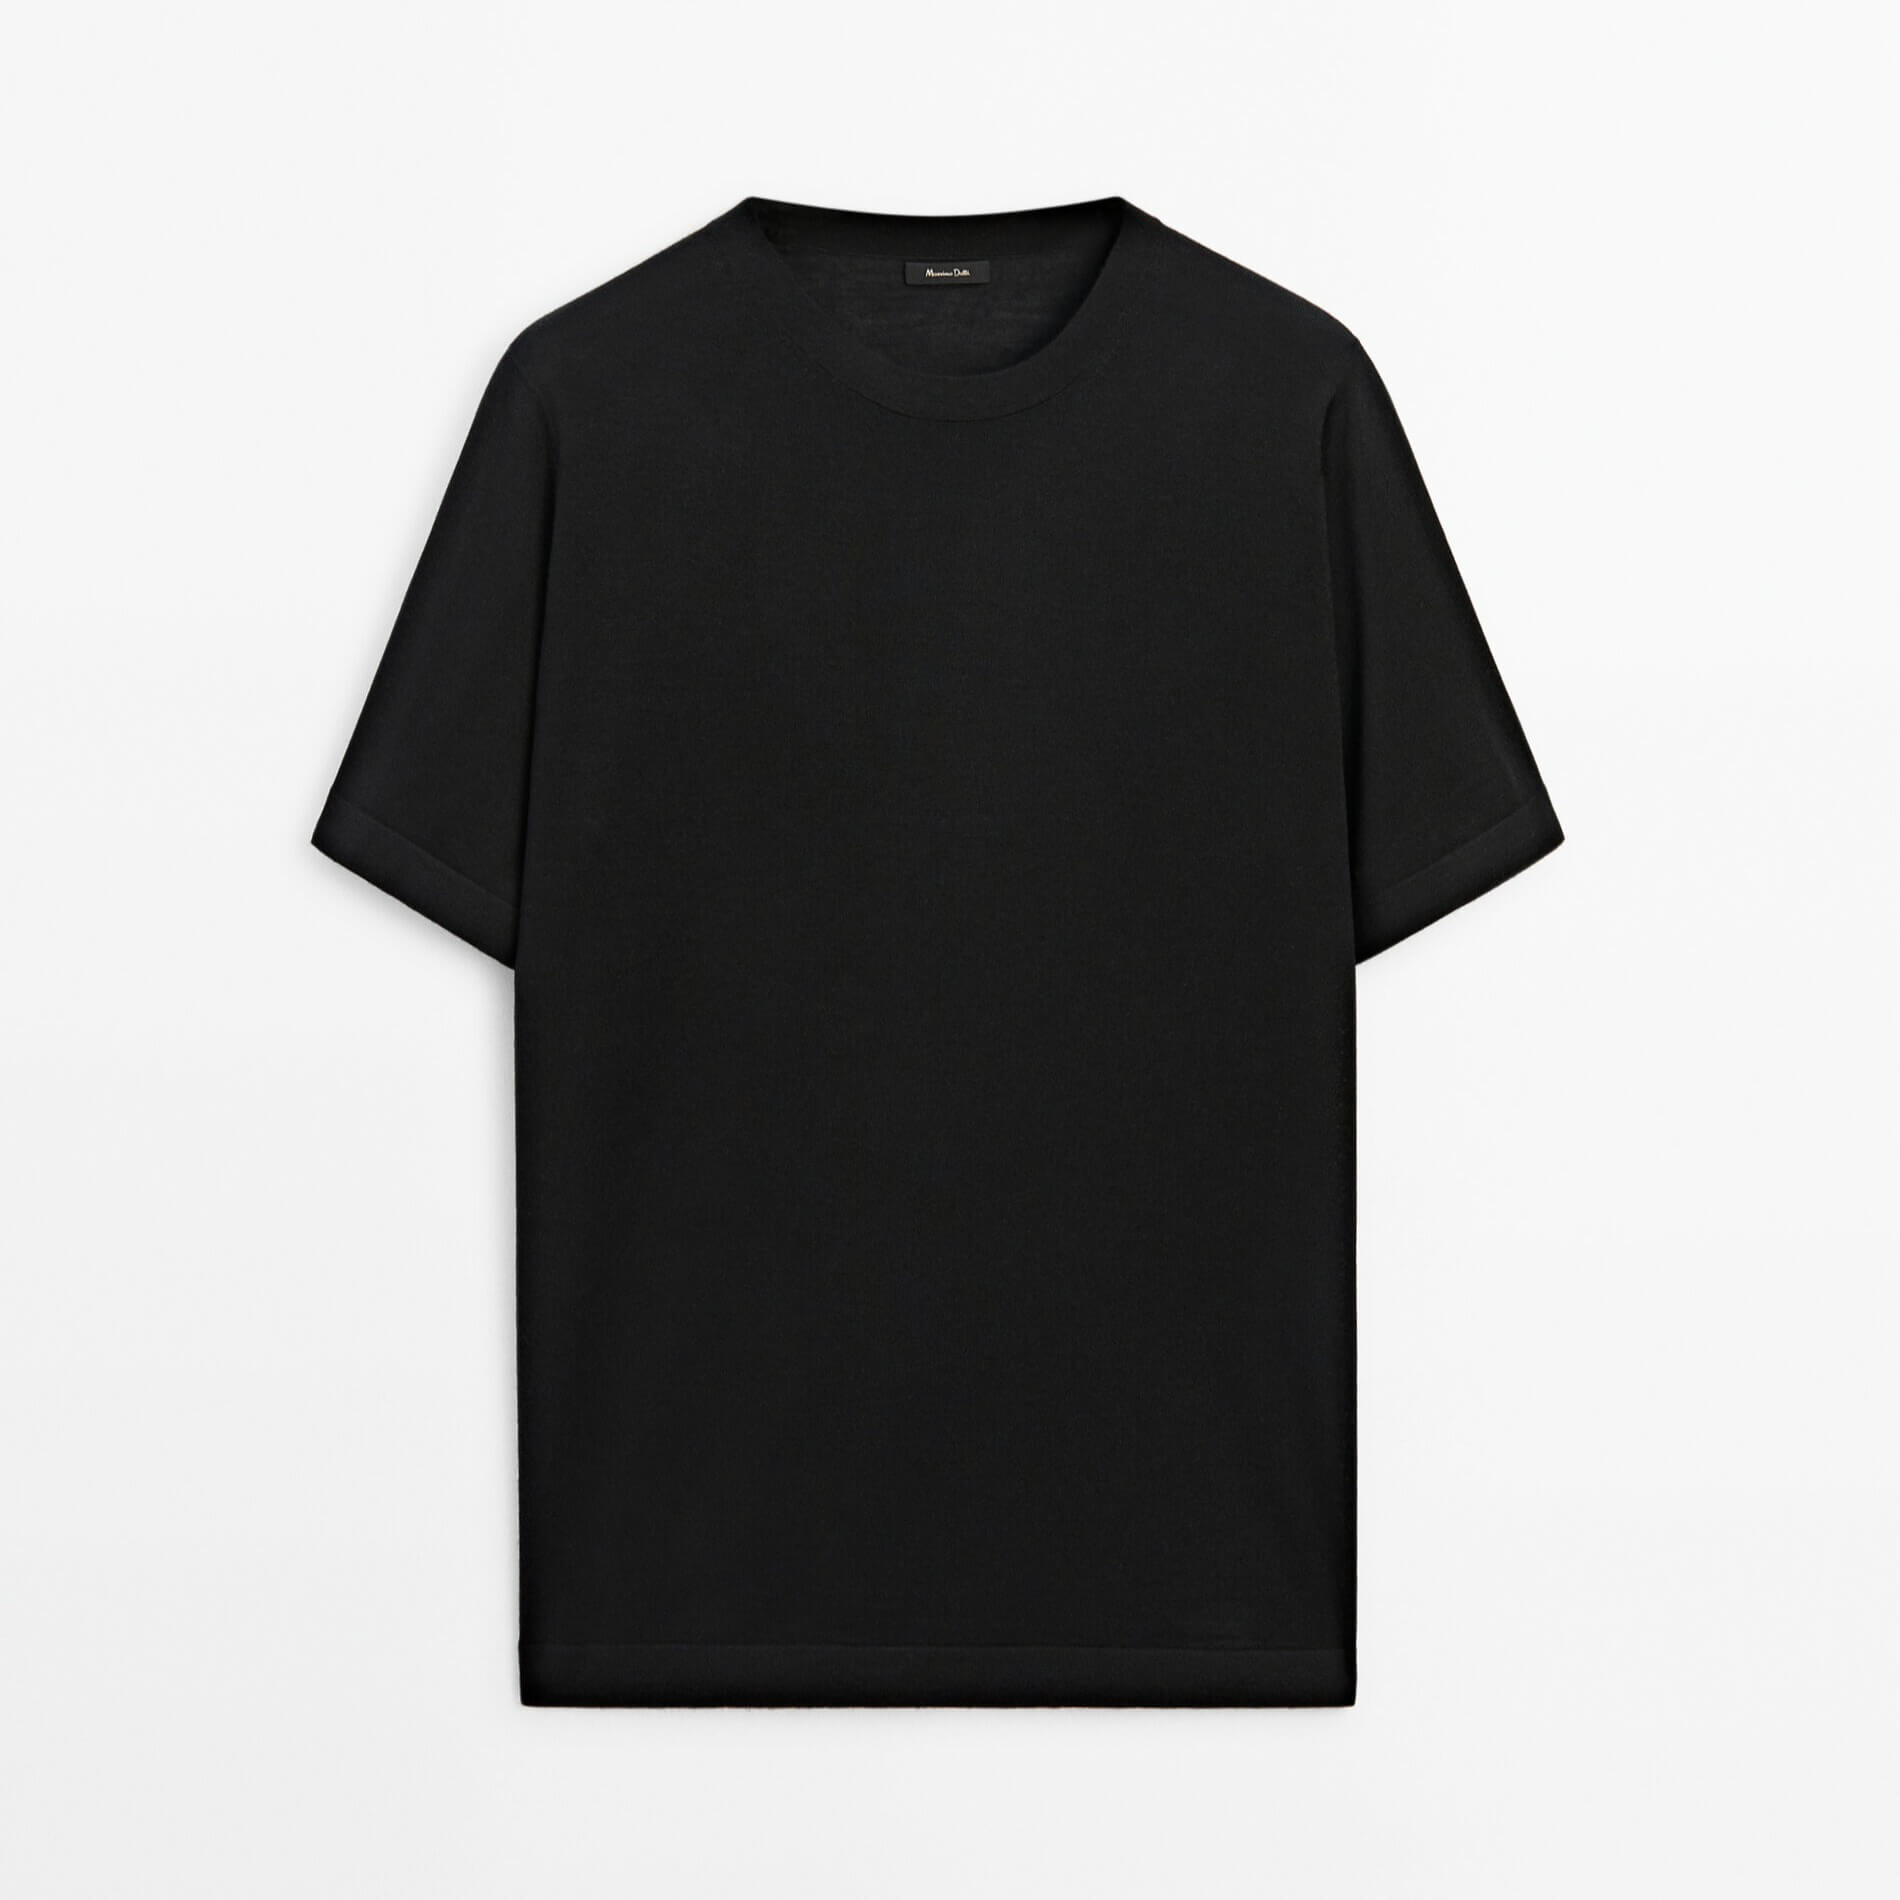 Футболка Massimo Dutti Short Sleeve Wool Blend, черный футболка с коротким рукавом новинка лета 2021 вязаная корейская свободная приталенная рубашка с круглым вырезом джокер пуловер куртка для